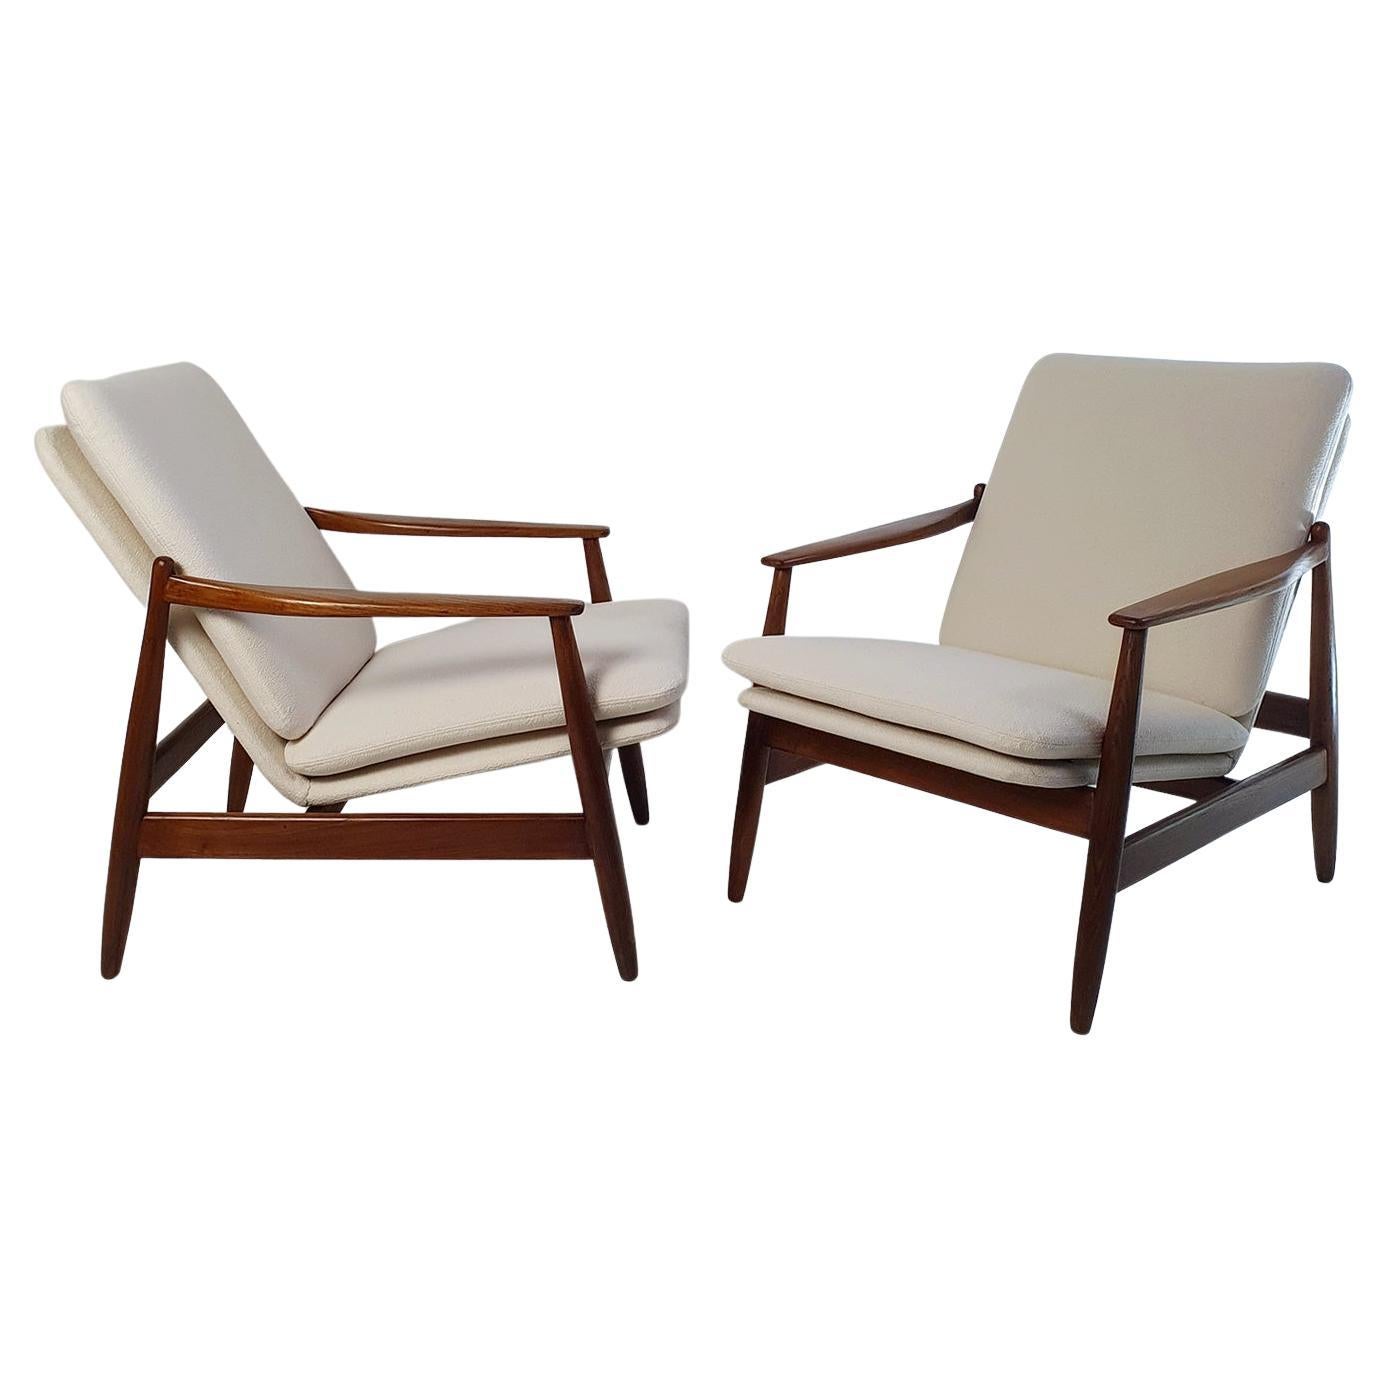 Diese italienischen Pizzetti-Sessel sind ein großartiges Beispiel für modernes Design aus der Mitte des Jahrhunderts, das in den 1960er Jahren produziert wurde. Die Stühle haben ein massives Eichengestell, das komplett fachmännisch restauriert